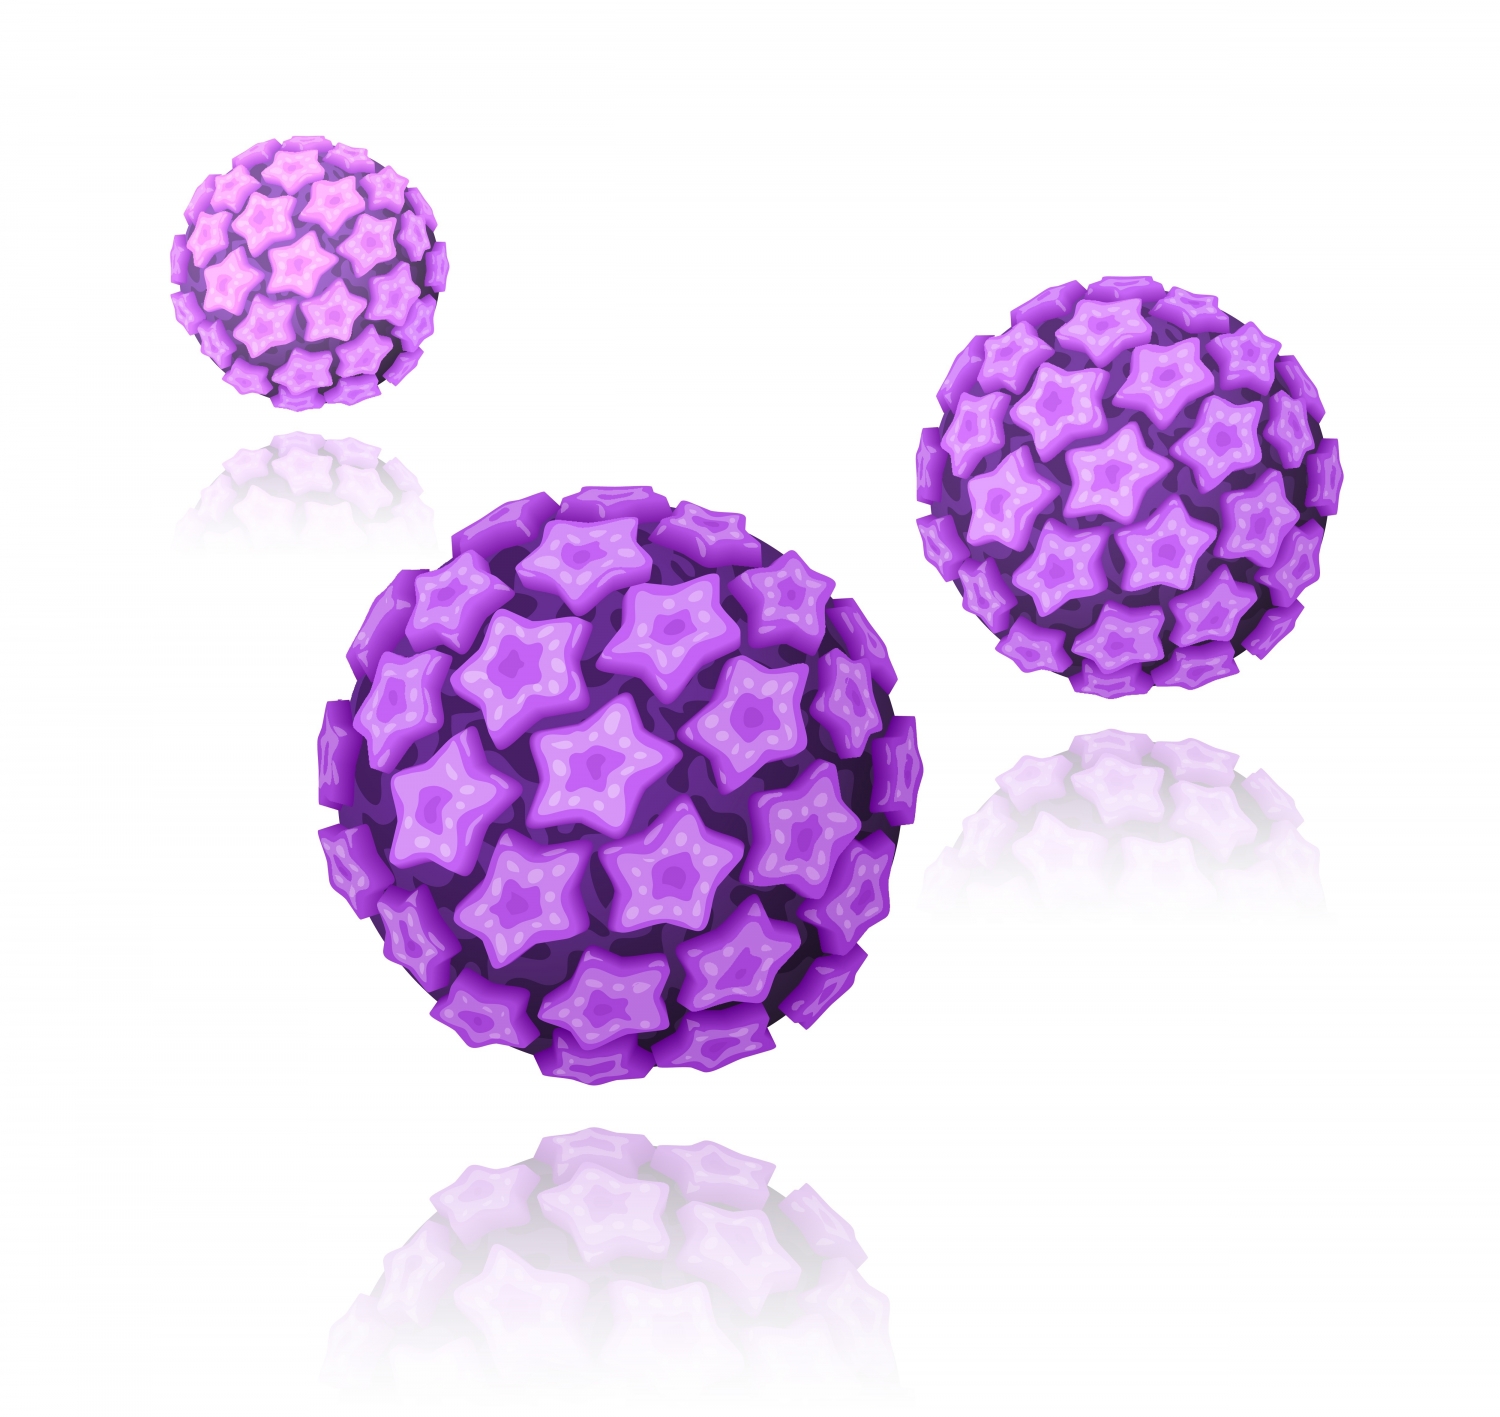 HPV teszt | Mályvavirág Alapítvány, Hpv magas kockázatú, kivéve 16 18